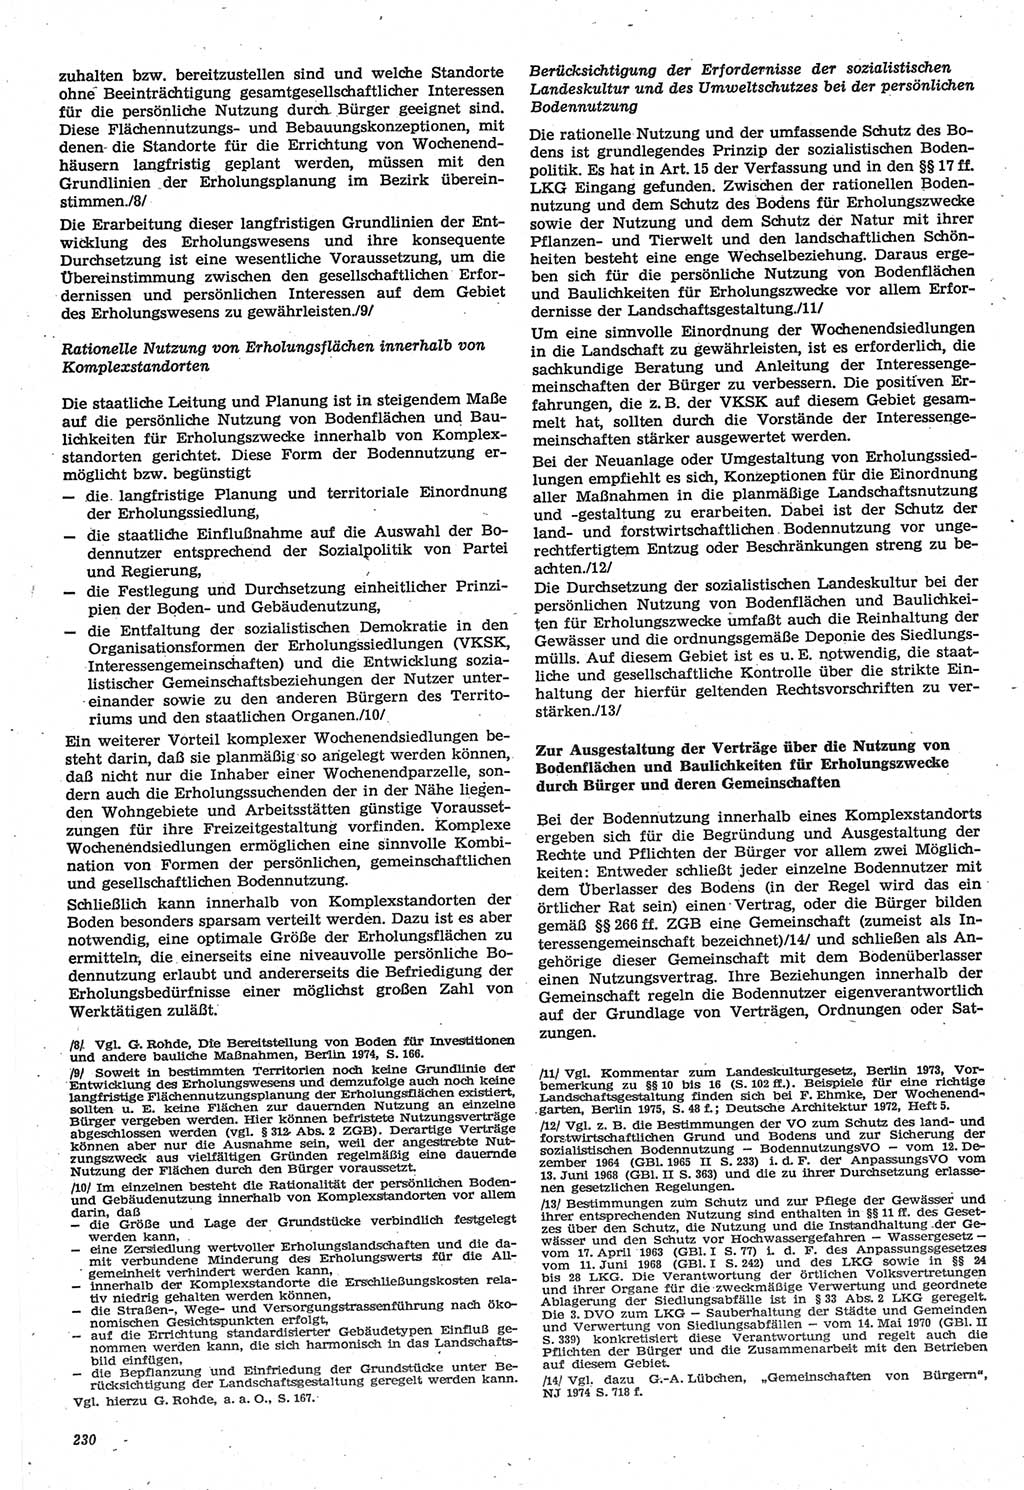 Neue Justiz (NJ), Zeitschrift für Recht und Rechtswissenschaft-Zeitschrift, sozialistisches Recht und Gesetzlichkeit, 31. Jahrgang 1977, Seite 230 (NJ DDR 1977, S. 230)